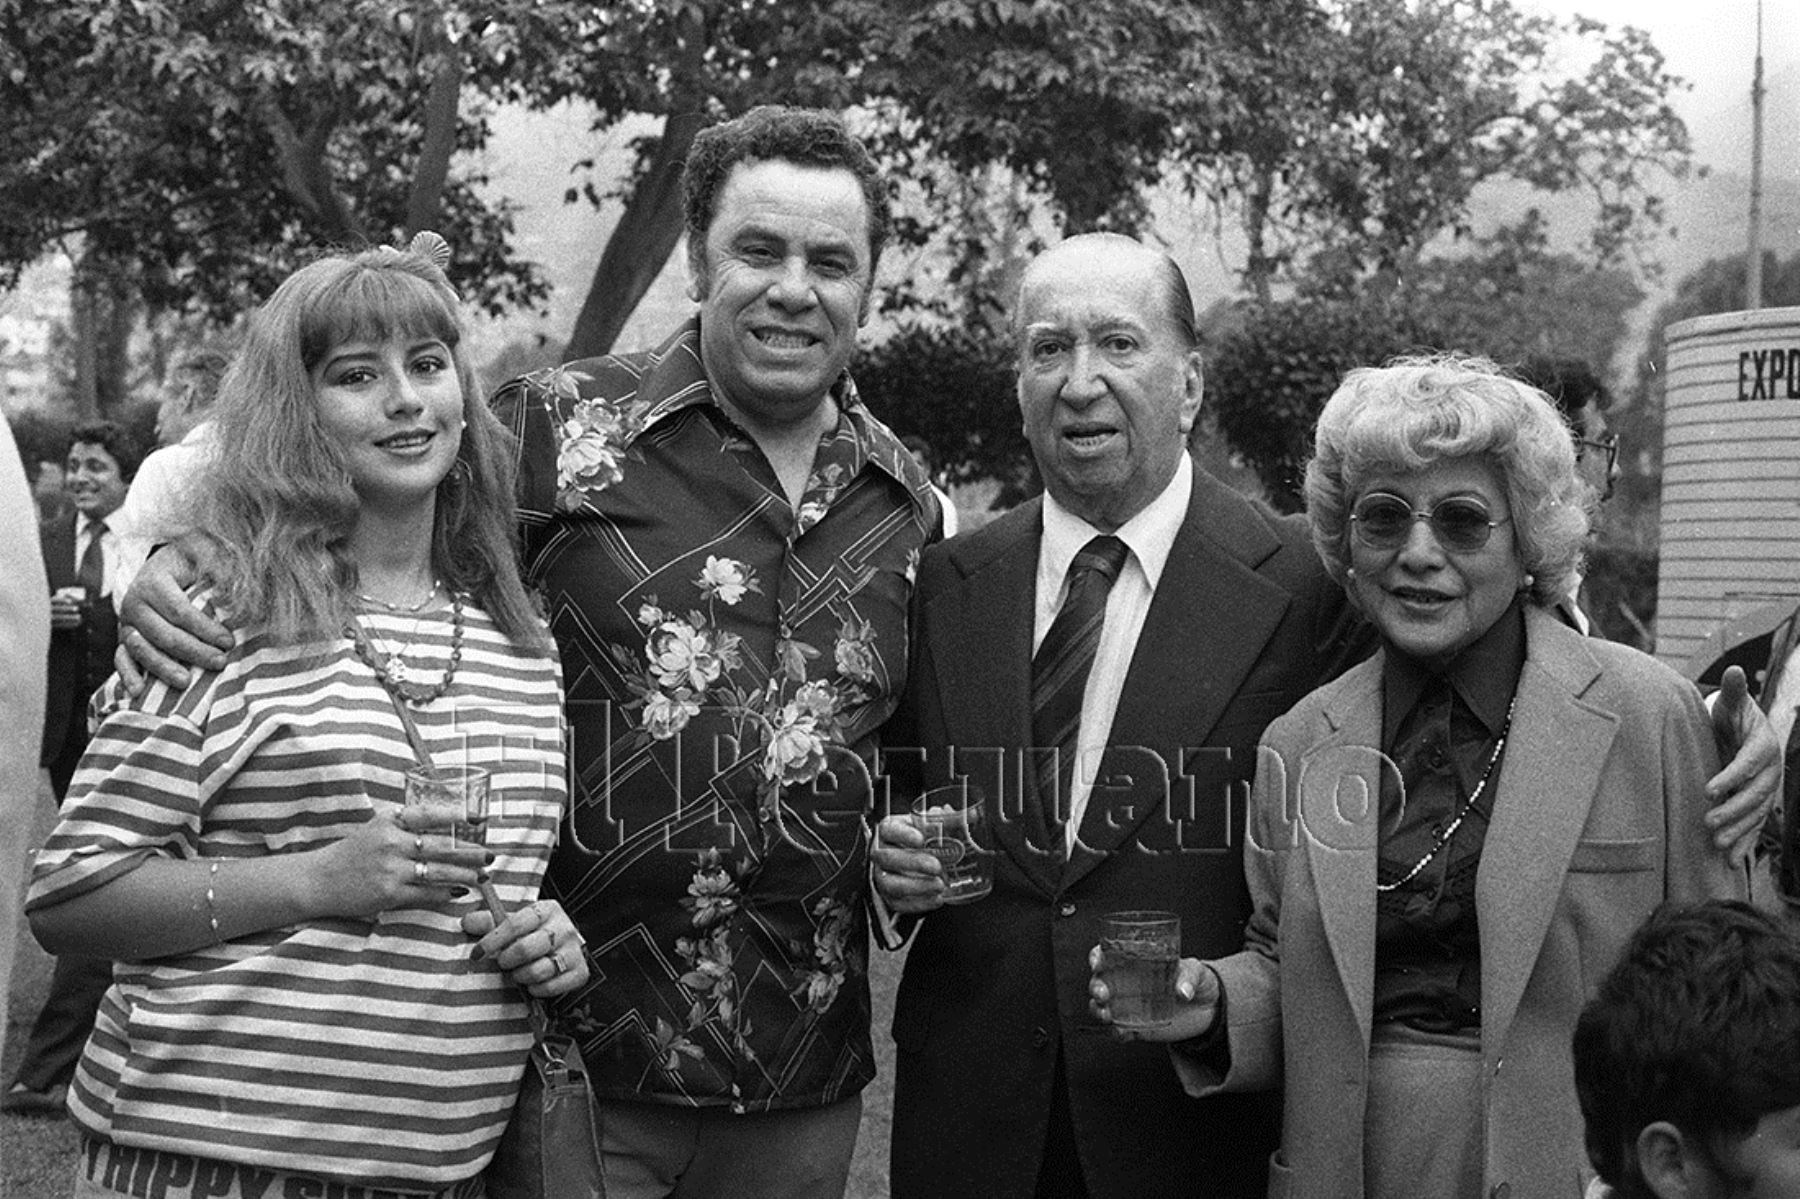 Lima - 29 octubre 1985 / El compositor Augusto Polo Campos junto a Susy Diaz y Jesús Vásquez durante una reunión de artistas criollos en el club Sporting Cristal.